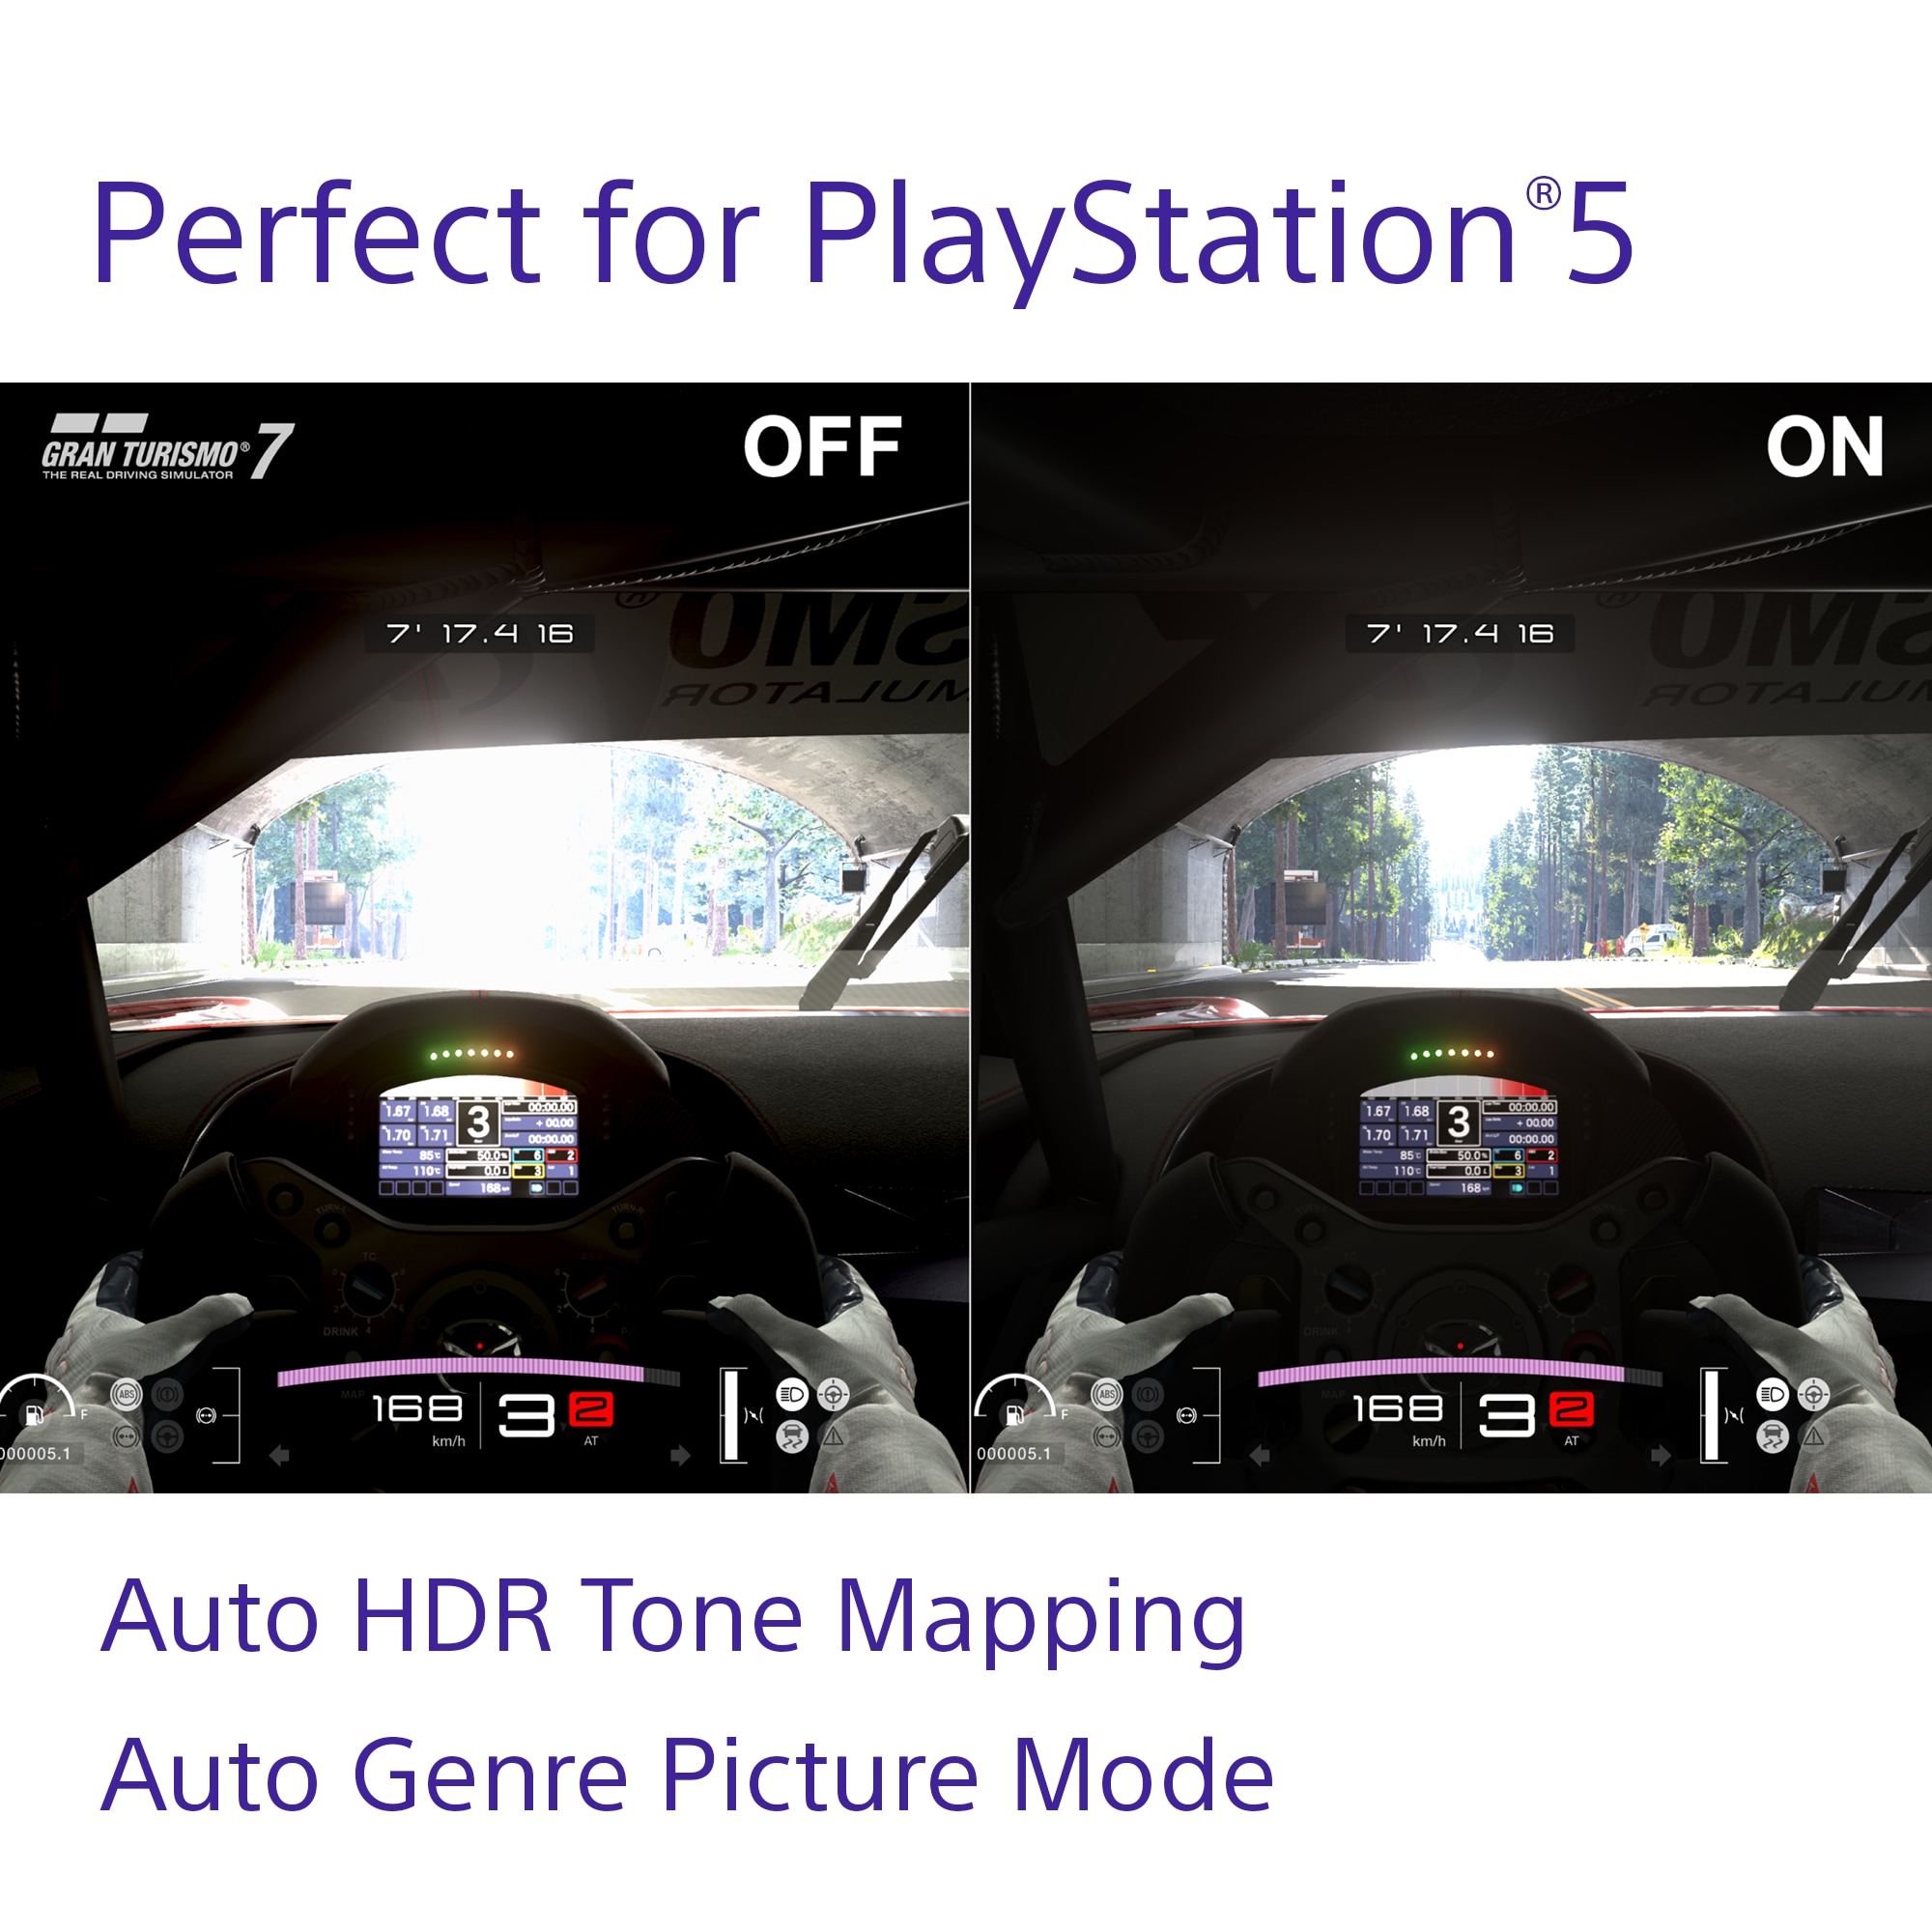 Sammenligning af gamingskærm med Playstation 5 og M3-skærm